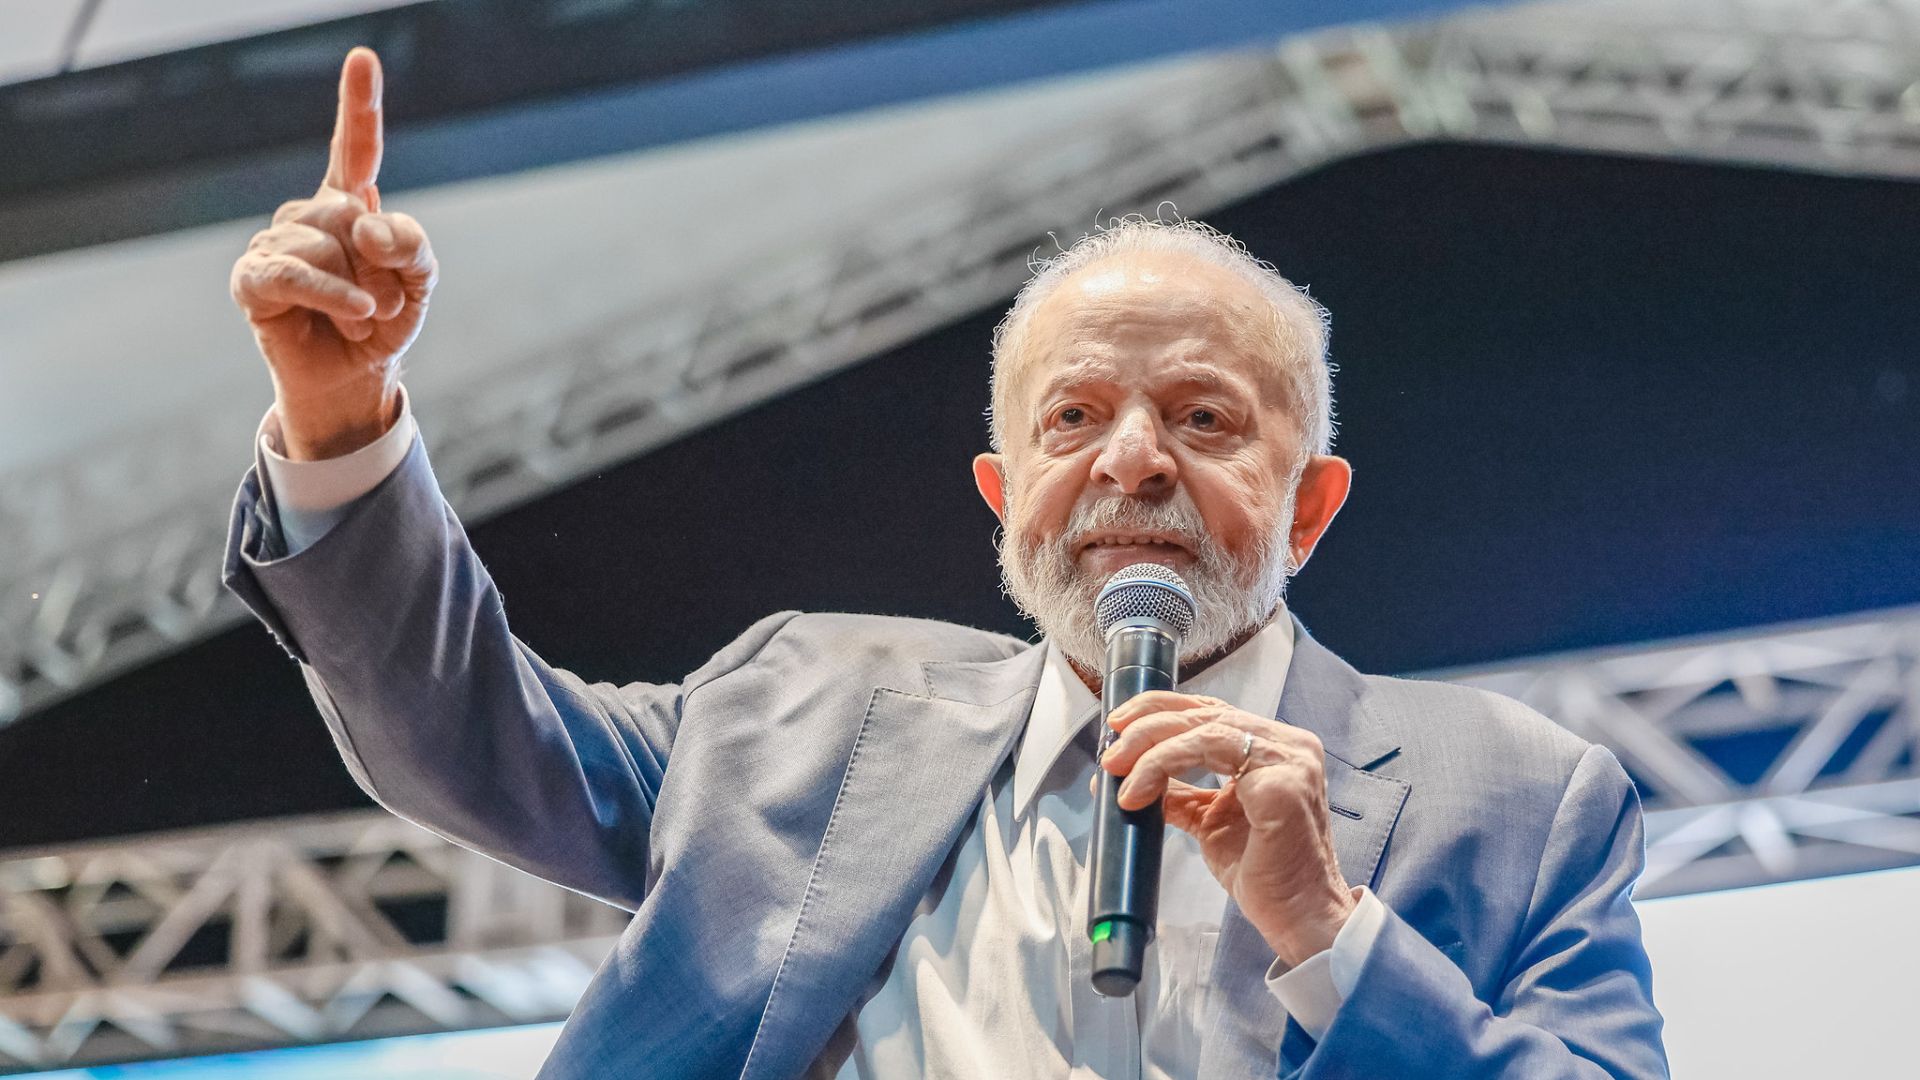 CAPITALISMO Lula descarta socialismo de Rússia e Cuba e diz eu quero um país com padrão de vida igual à Suécia, Dinamarca e Alemanha